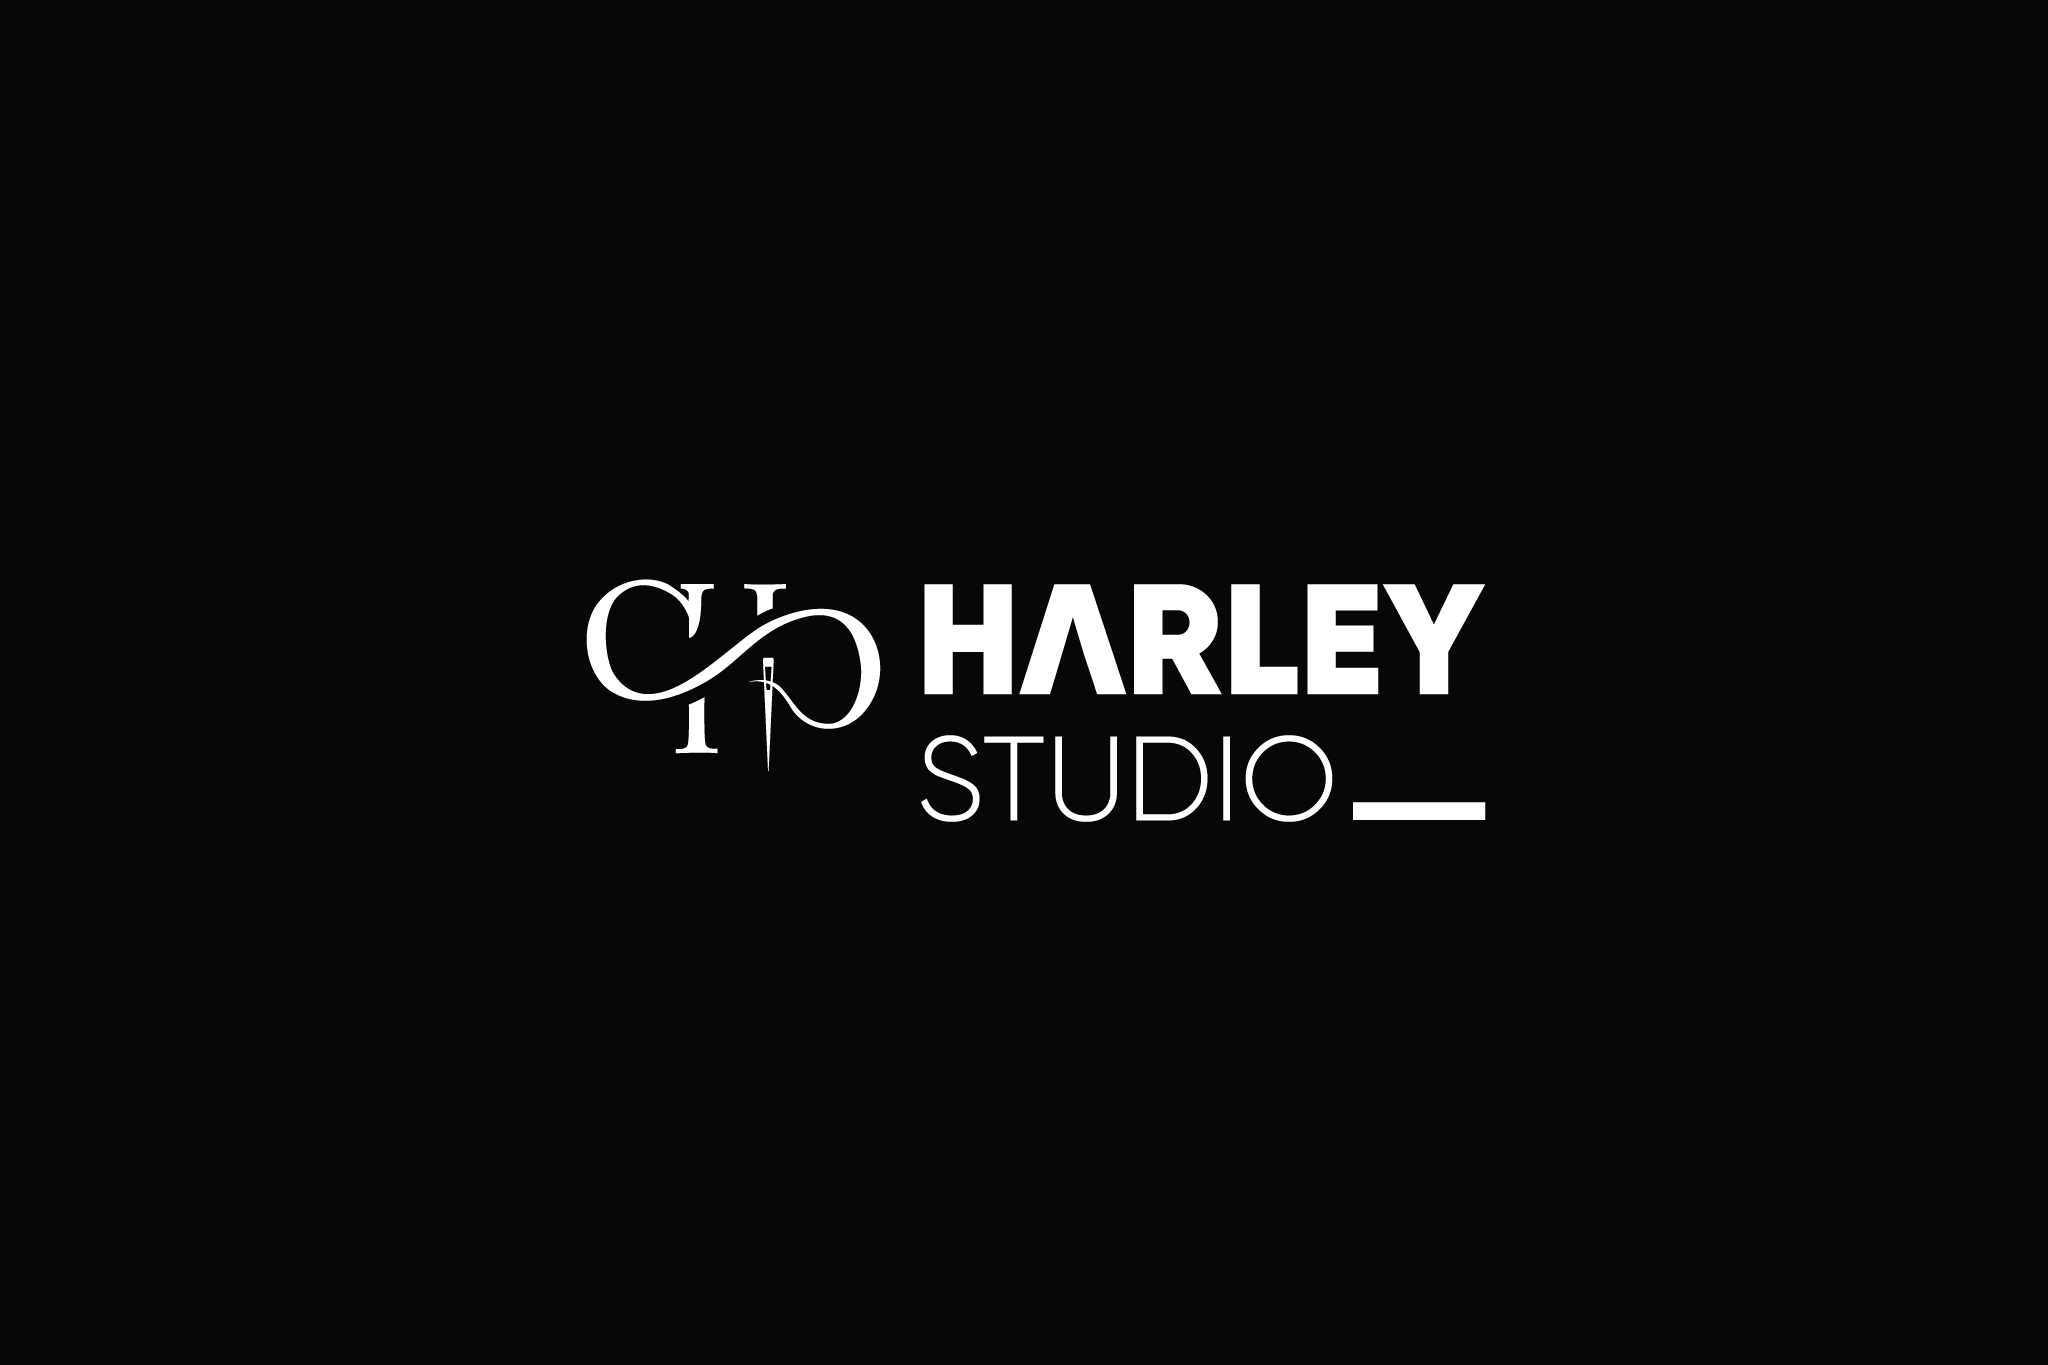 THIẾT KẾ LOGO THỜI TRANG HARLEY STUDIO